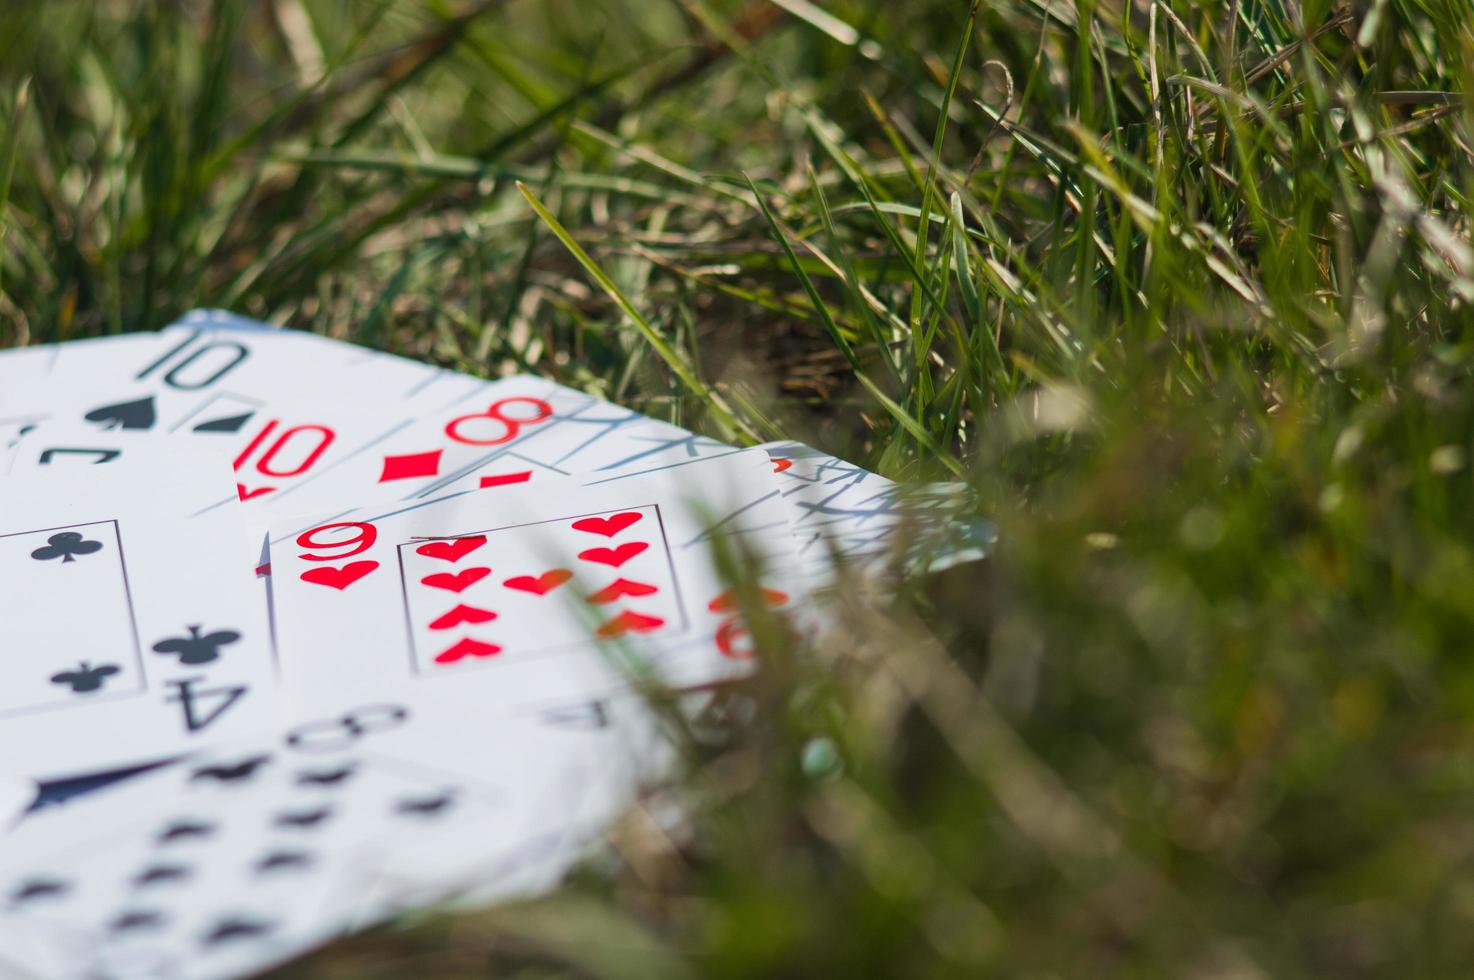 cartes à jouer dans l'herbe verte se bouchent photo